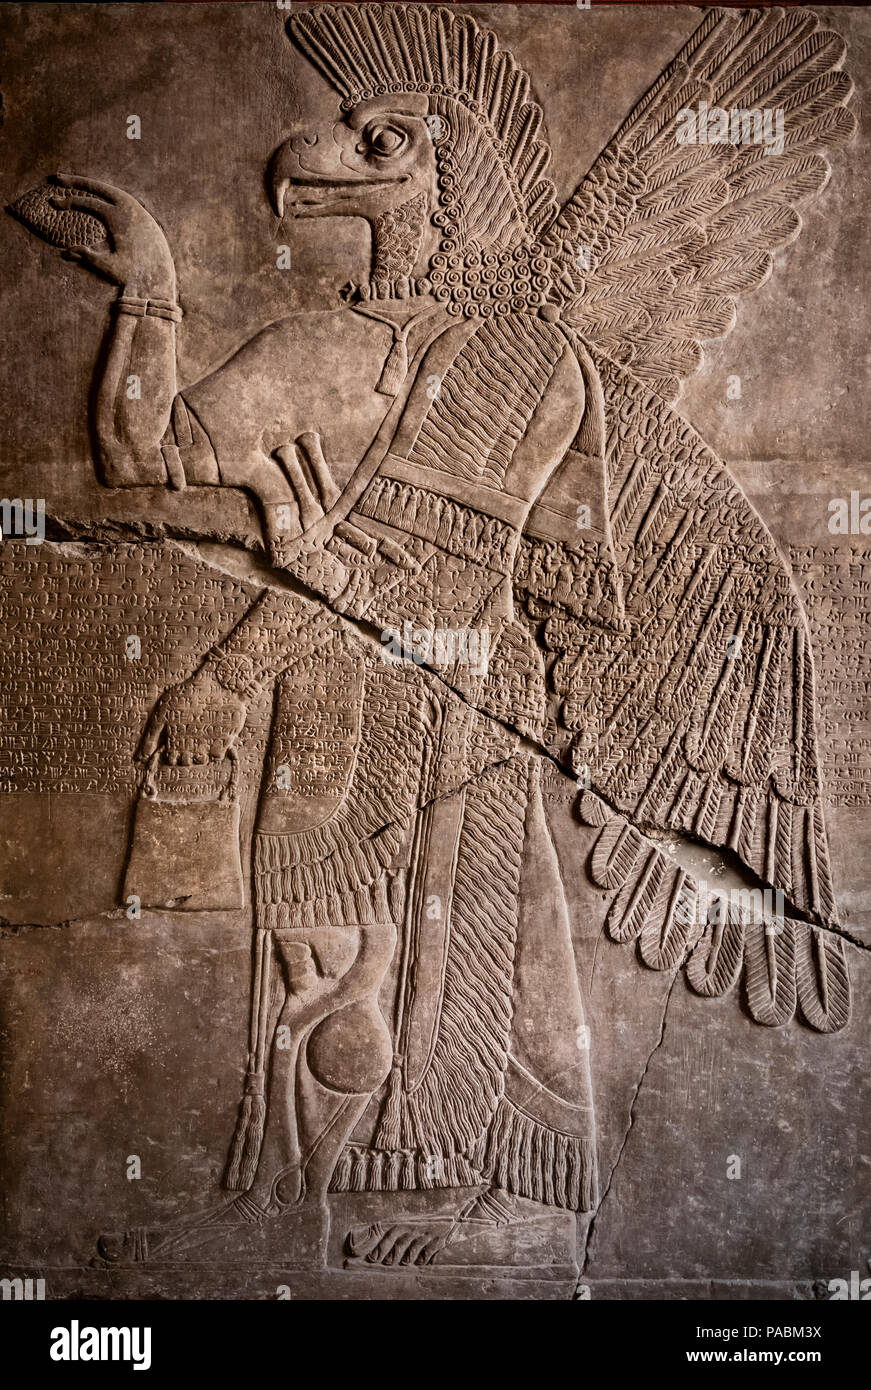 Sculpture assyrienne (9-13ème C BCE) MUSÉE PERGAMON MUSEUM ISLAND BERLIN ALLEMAGNE Banque D'Images